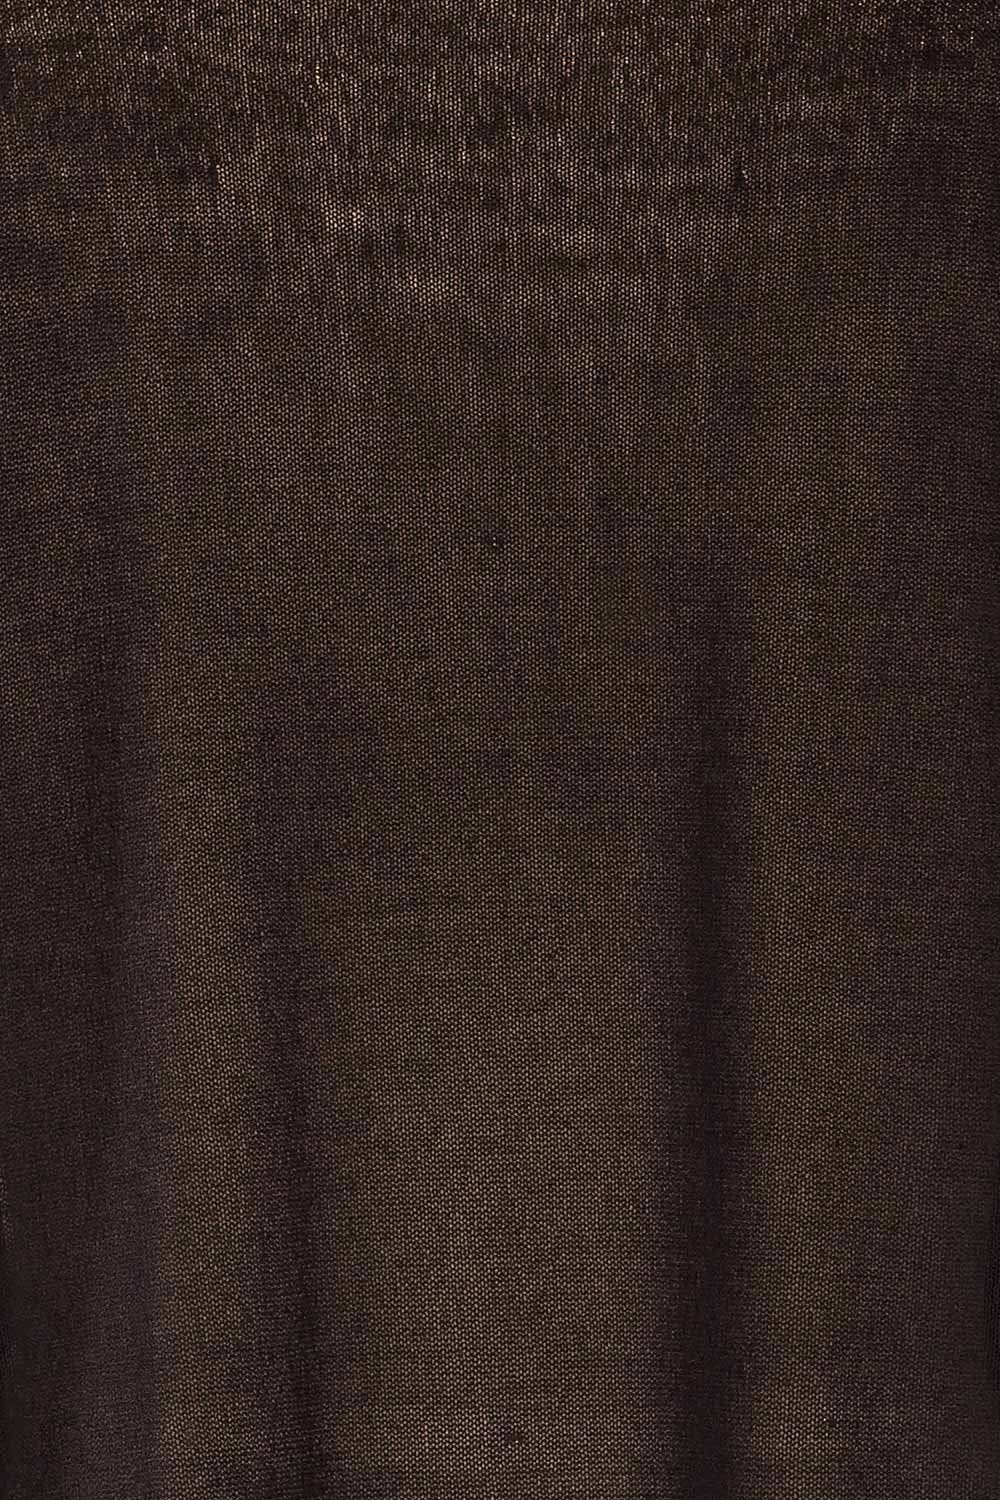 Melbourne Black Sheer Long Sleeve Top | La petite garçonne texture